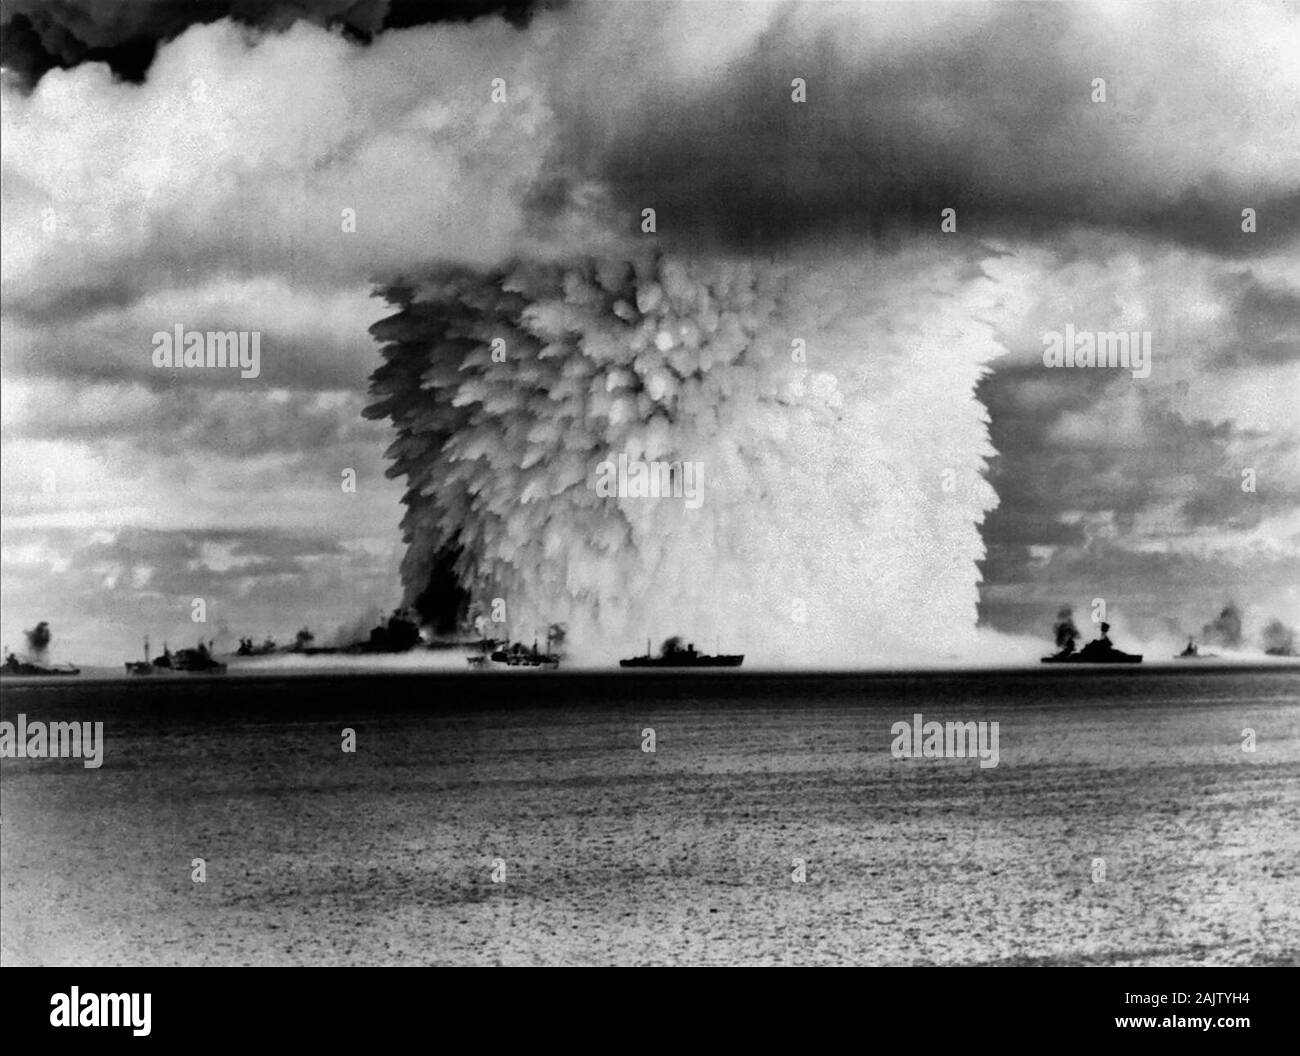 Croisée des chemins Baker les essais d'armes, 26 juillet 1946 : vue prise de l'île Eneu dix secondes après l'arme a été tiré. Le porte-avions USS Saratoga (CV-3) est visible dans le premier plan à gauche, d'être sortis de l'eau. Elle a coulé plus tard ce jour. Banque D'Images